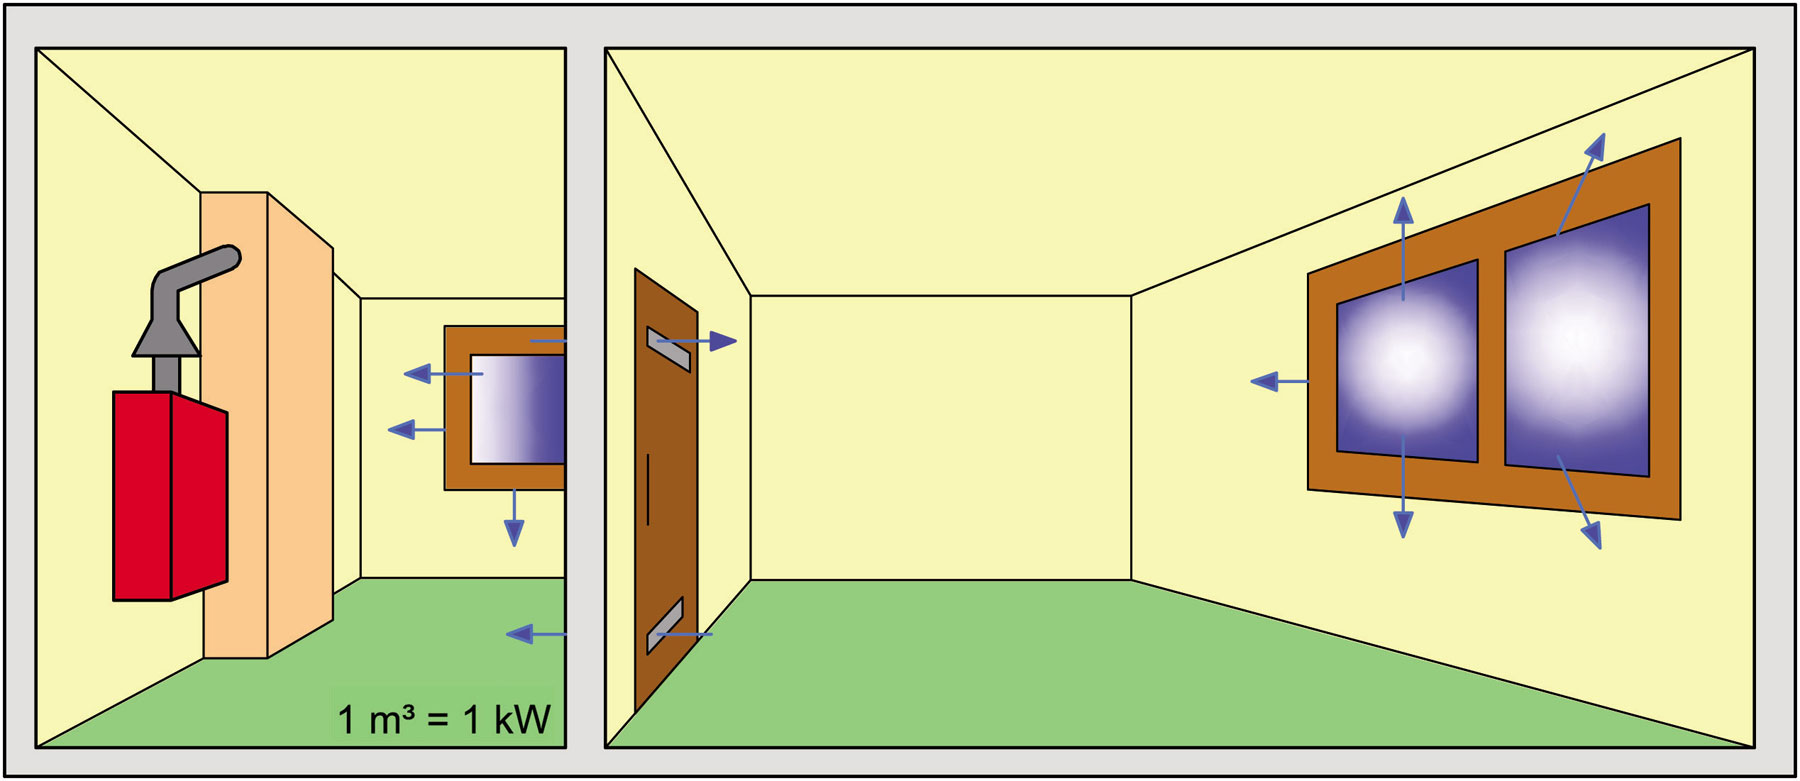 Obr. 2 Umiestnenie plynového spotrebiča a prívod spaľovacieho vzduchu – prepojenie miestnosti, kde sa nachádza spotrebič, so susednou miestnosťou